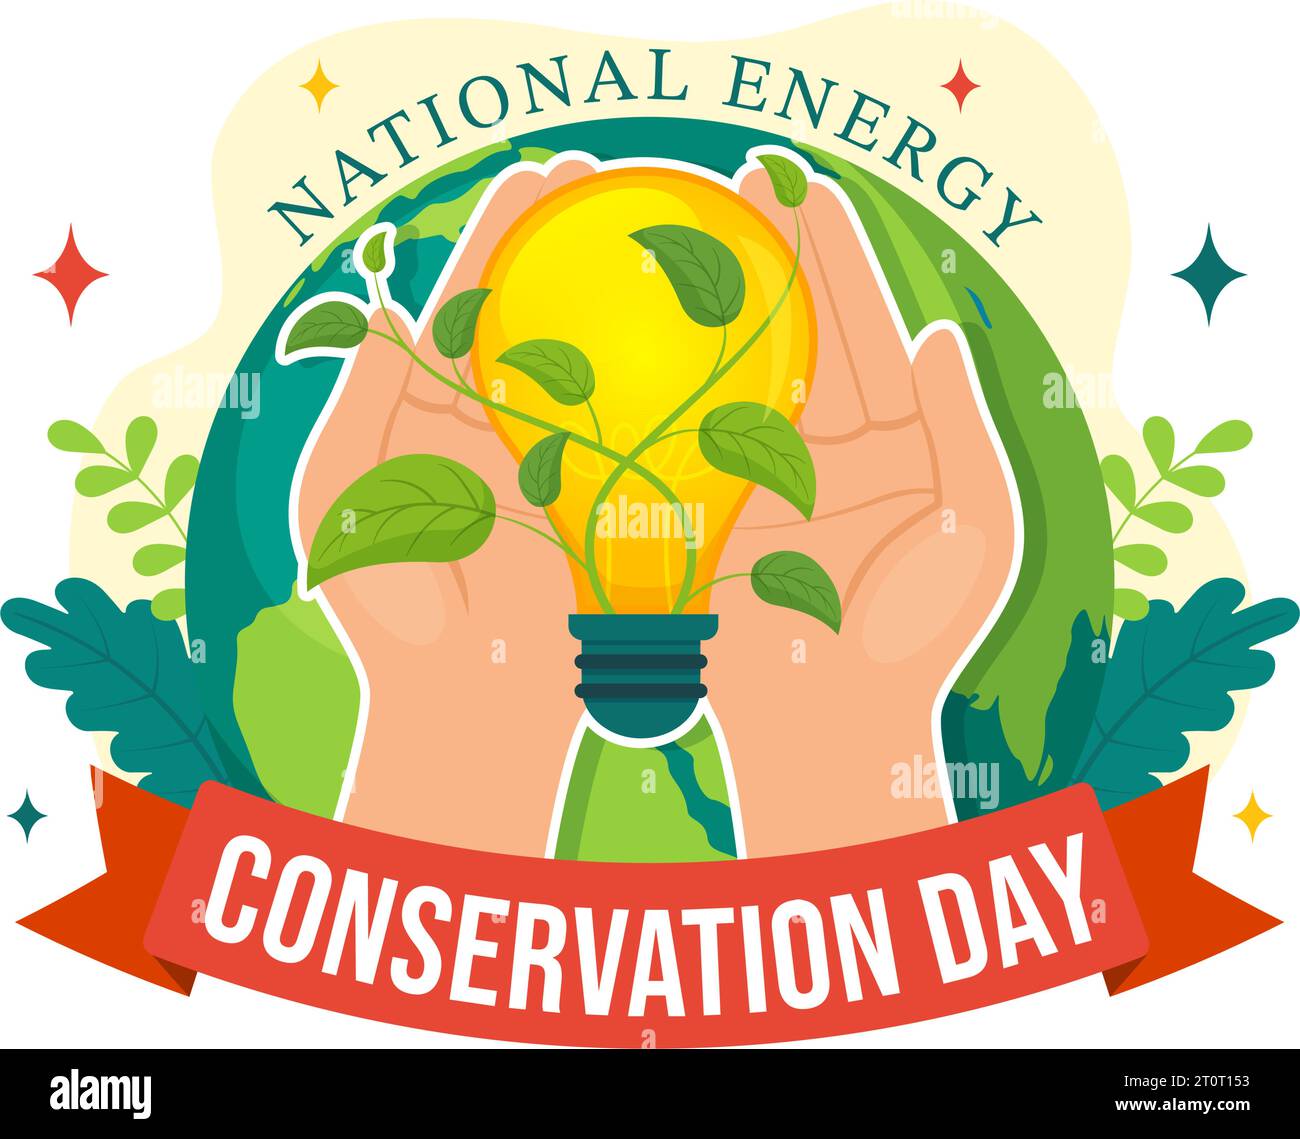 Journée nationale de conservation de l'énergie Illustration vectorielle le 14 décembre pour Save the Planet et Green Eco friendly avec lampe et conception de fond de la Terre Illustration de Vecteur